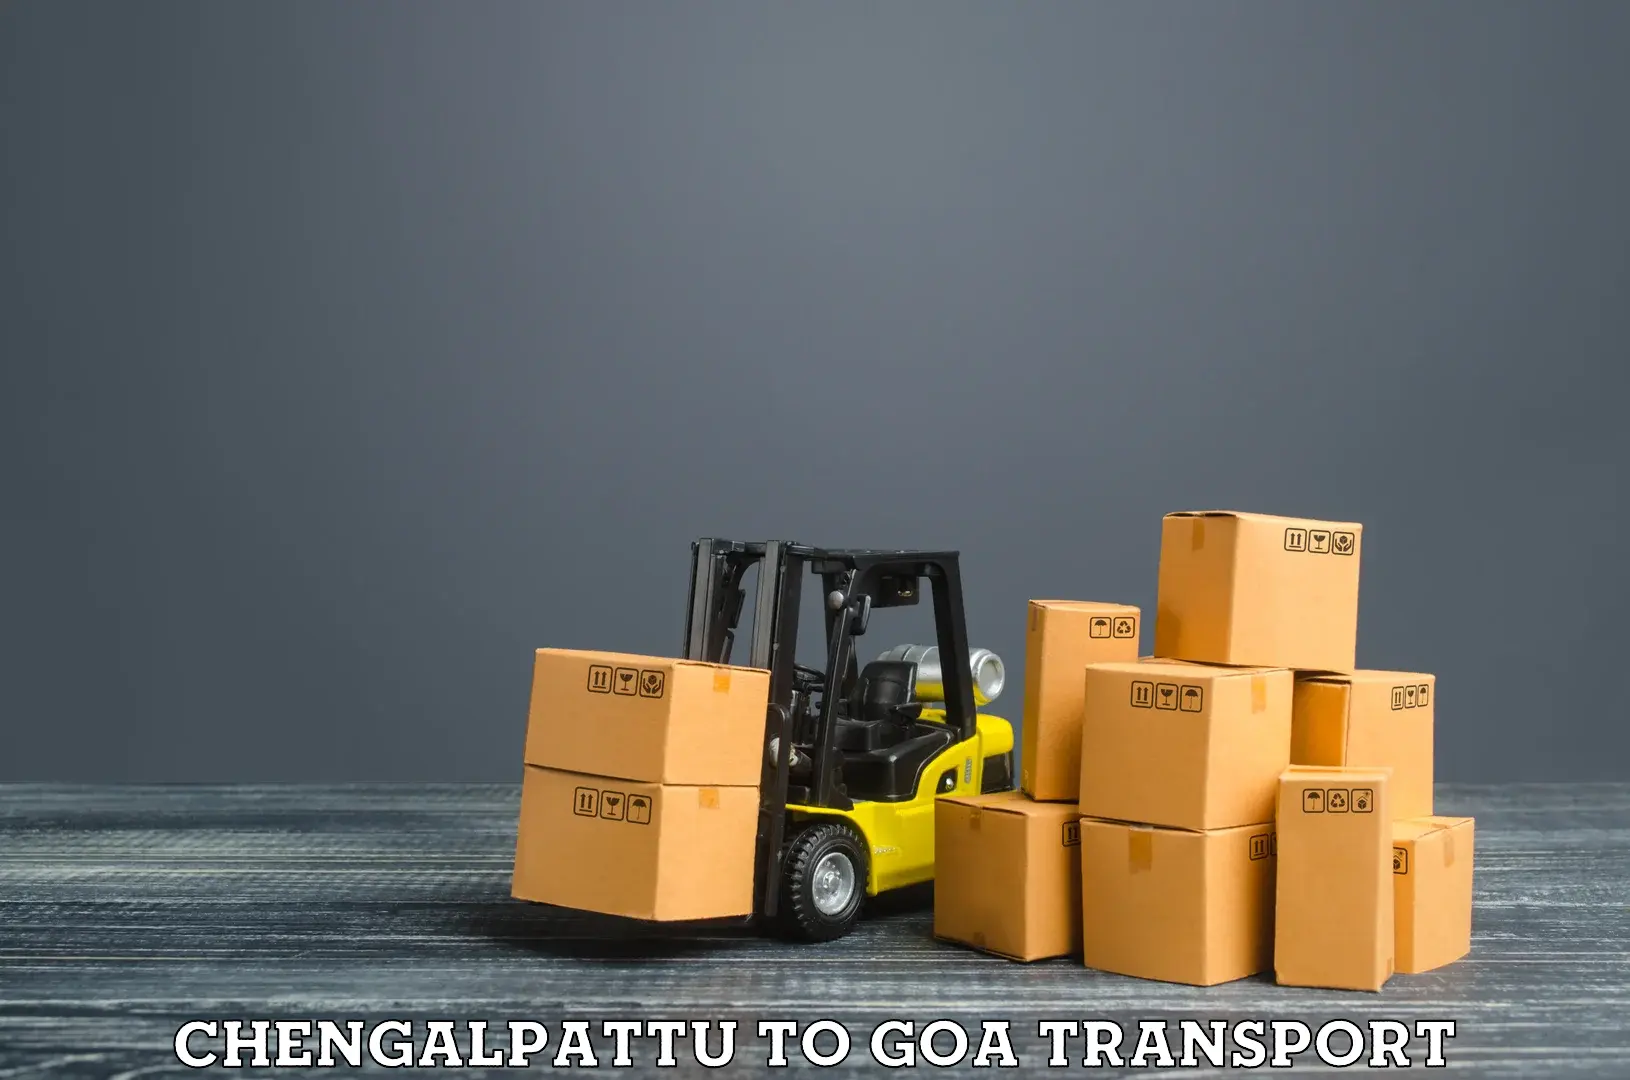 Truck transport companies in India Chengalpattu to Vasco da Gama